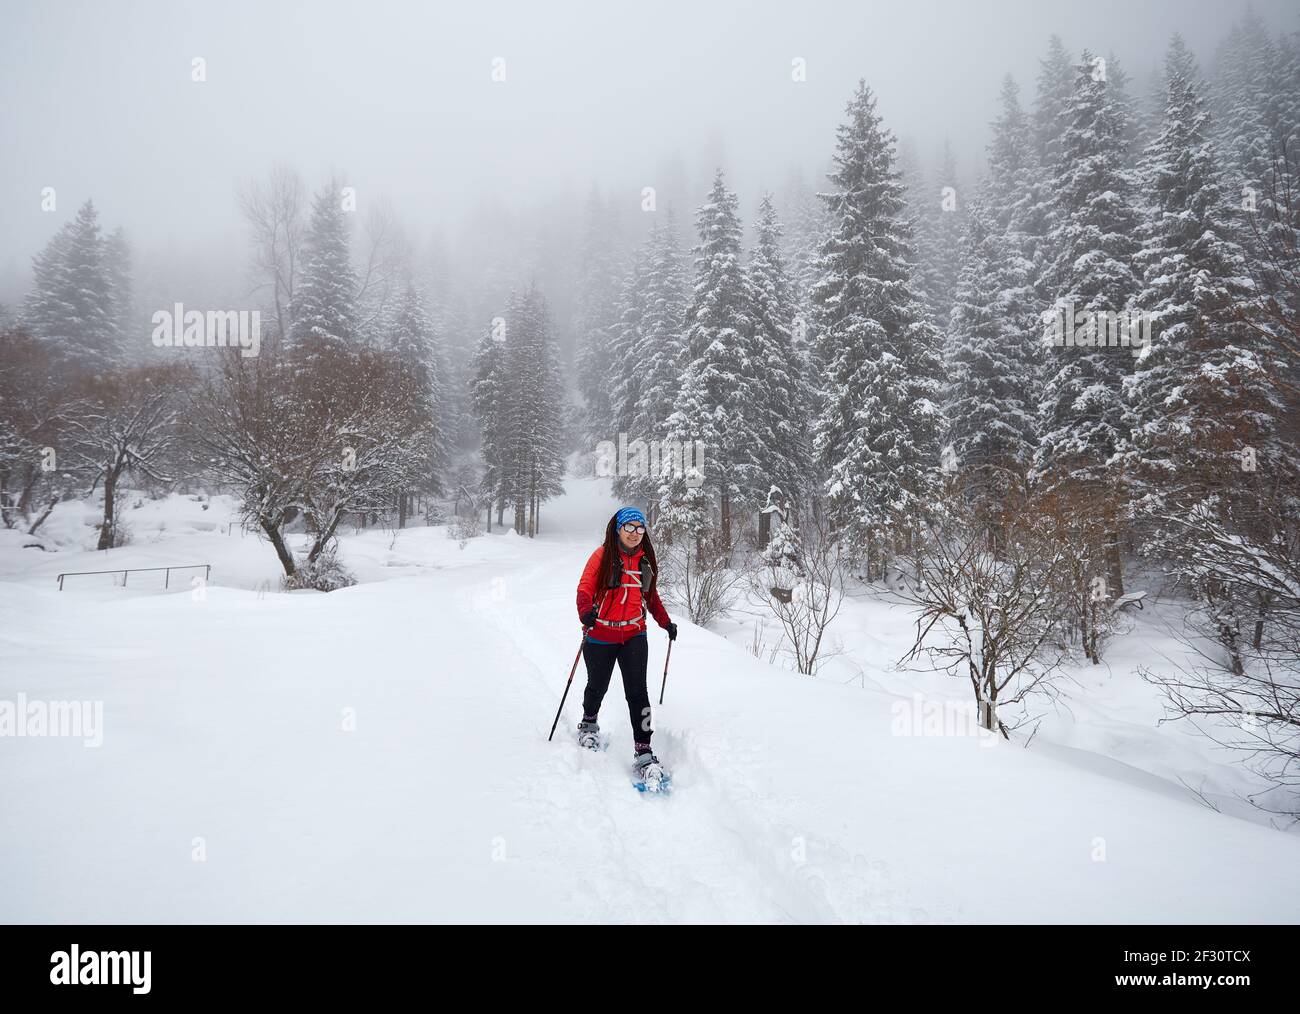 Frau, die mit Schauschuhen unterwegs ist in den Winter verschneiten Wald in Almaty, Kasachstan Stockfoto